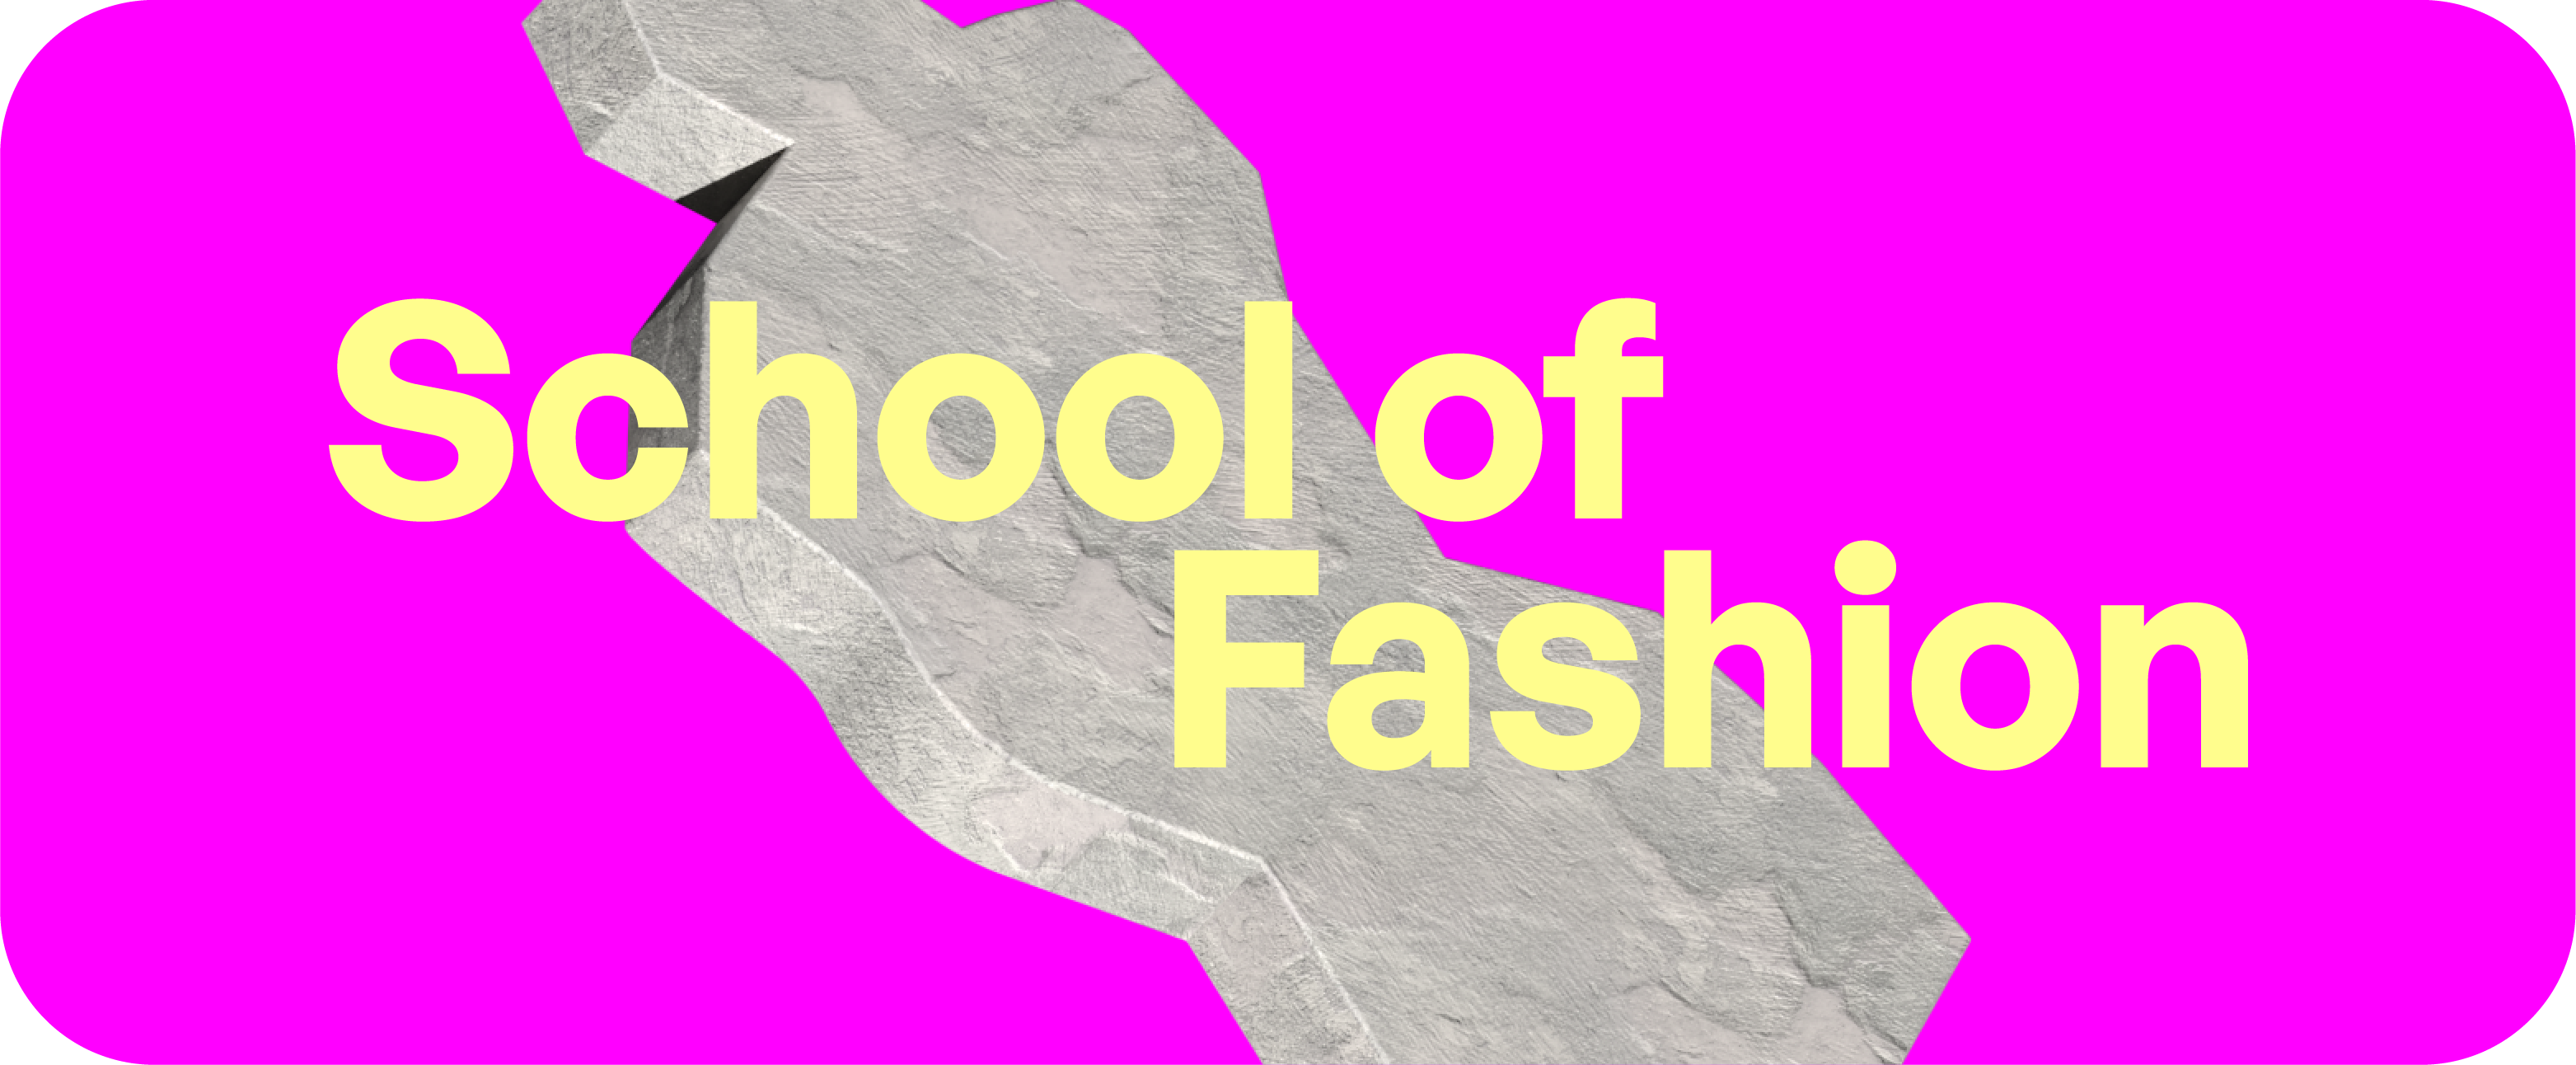 School of Fashion